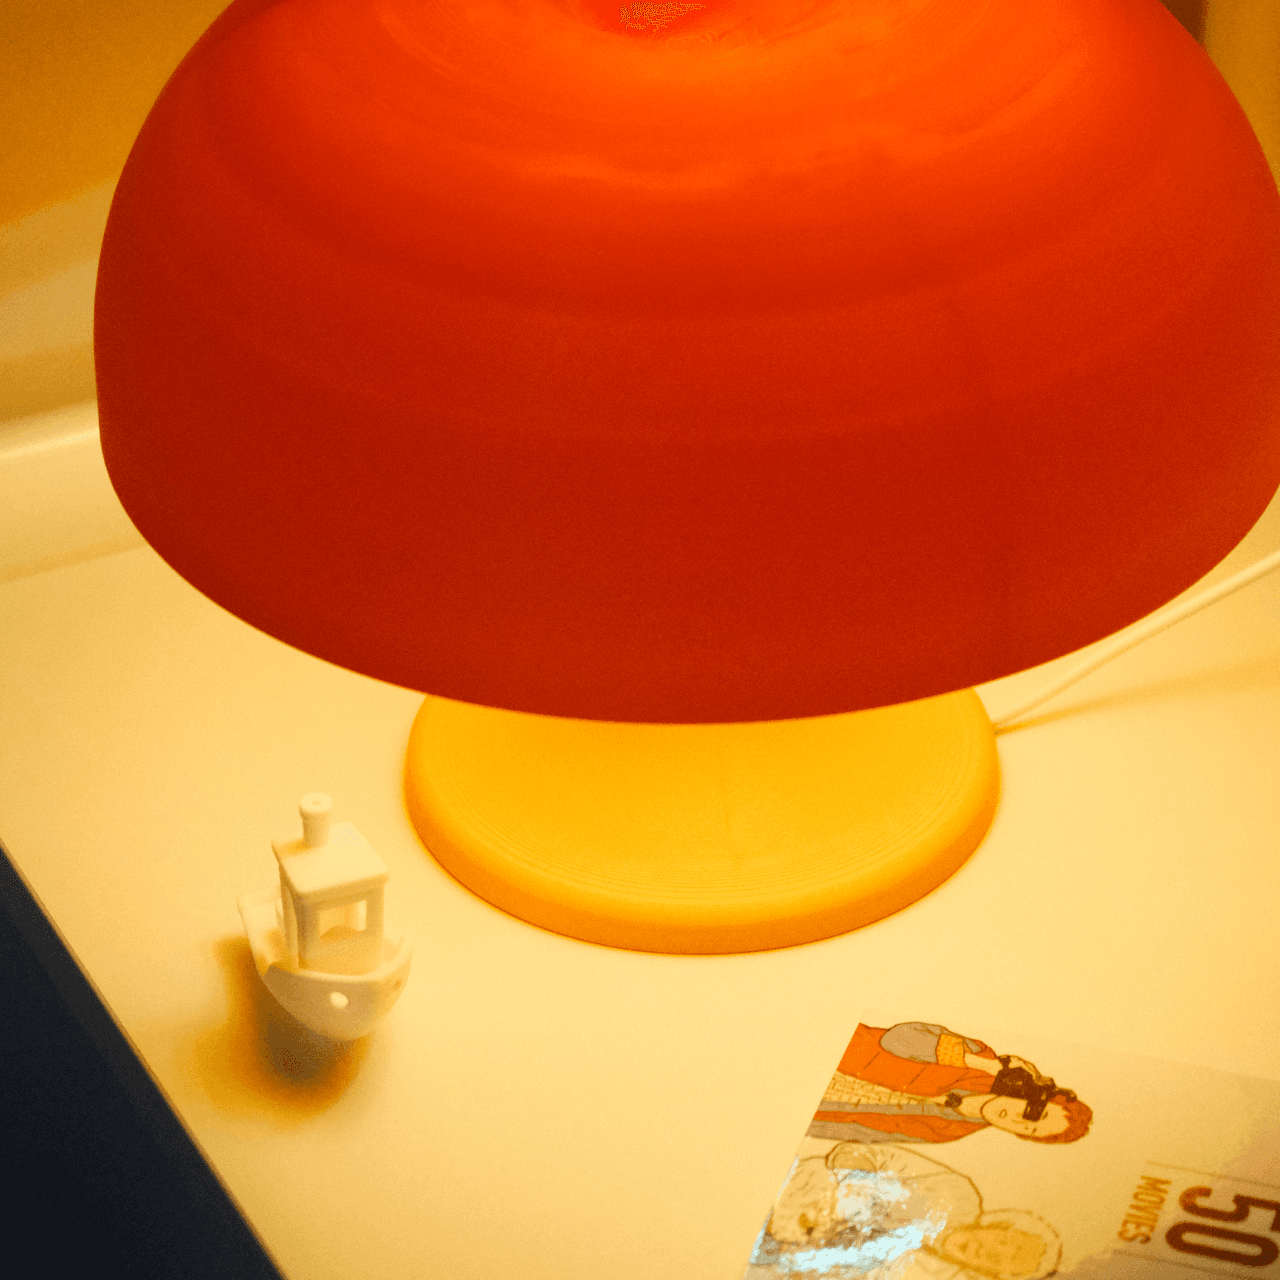 RETRO MUSHROOM LAMP 3d model